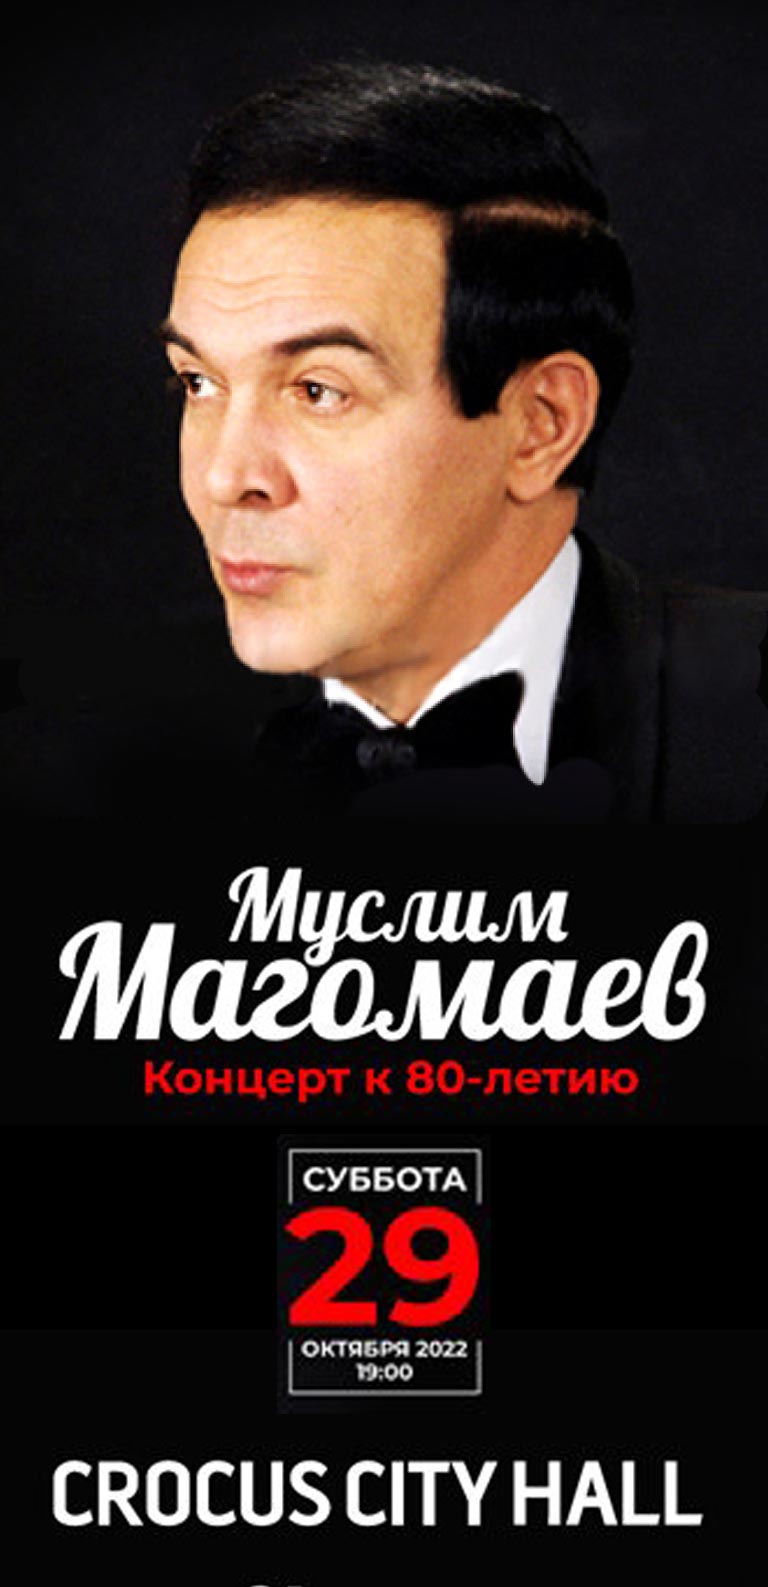 Купить Билеты на концерт Муслим Магомаев. Концерт к 80-летию 29 октября 2022 в Crocus City Hall